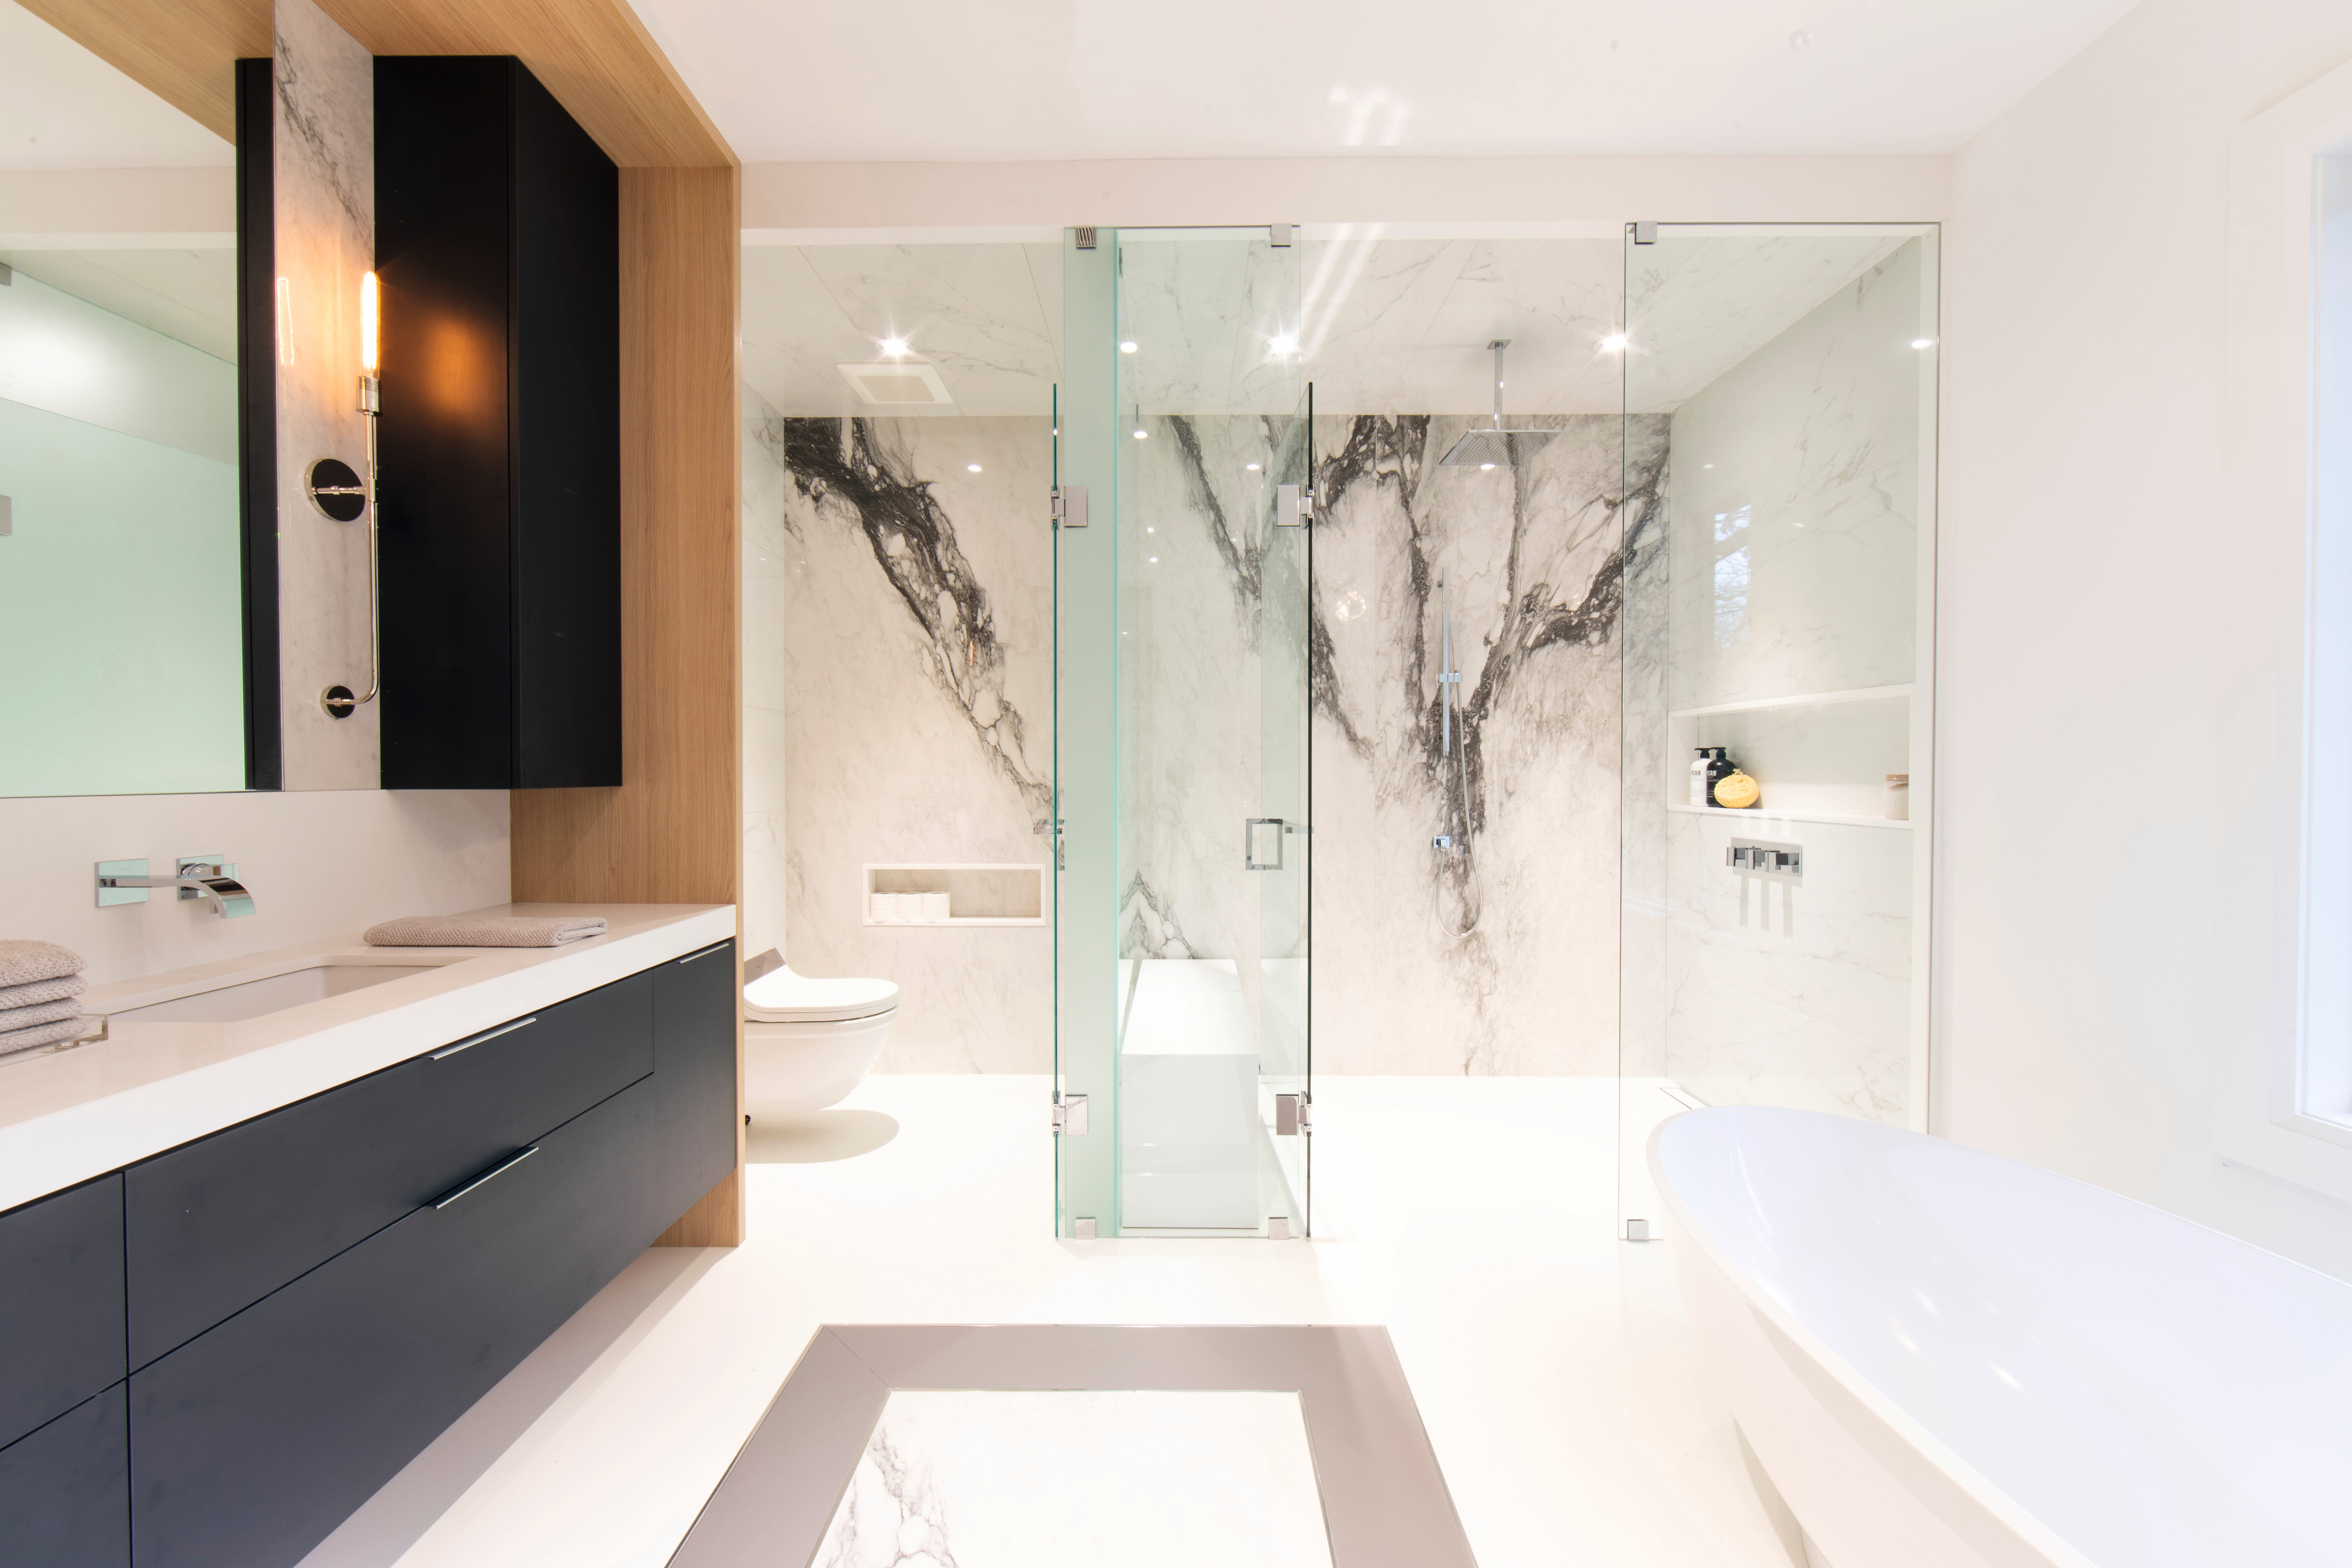 Черные акценты в комбинациях со светлым декором, имитирующим текстуру натурального дерева, и изысканным мрамором превращают ванную комнату в место для приятного времяпровождения